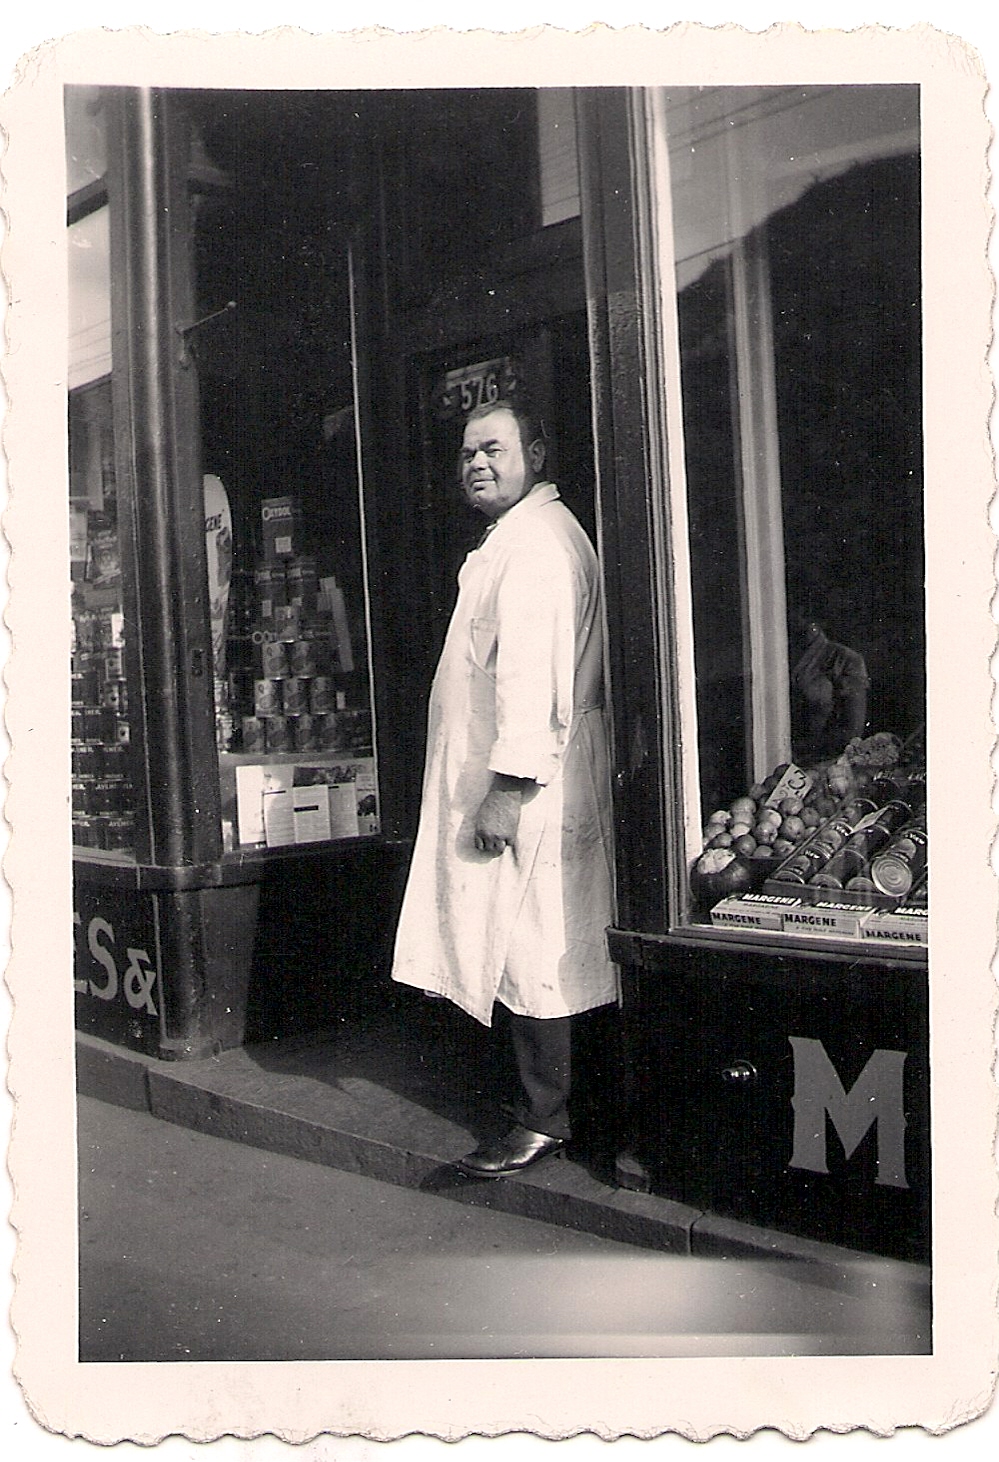 Un homme portant un long manteau blanc se tient à l’entrée d’une boucherie où l’on voit une pile de conserves en vitrine.